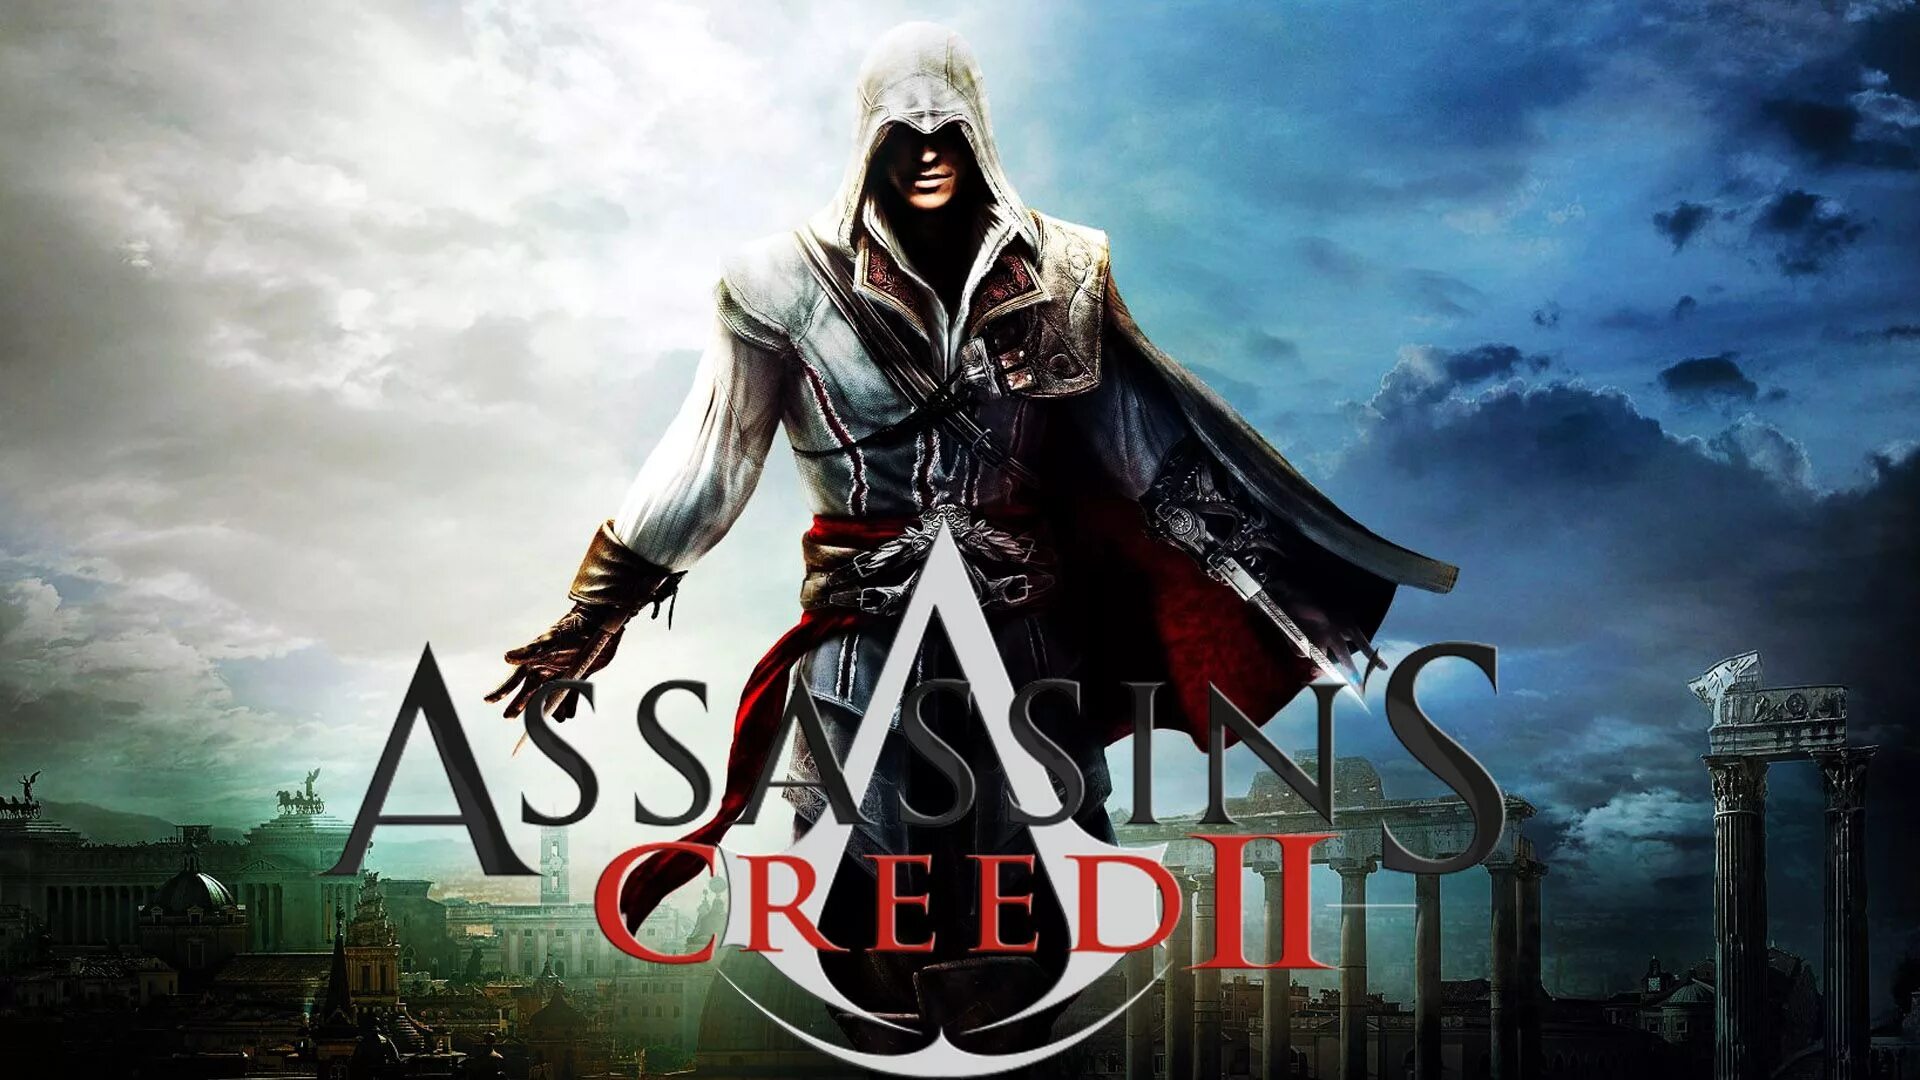 Assassin's Creed 2 Постер. Ассасин Крид 2 обложка игры. Кредо убийцы 2. Assassin's creed soundtrack